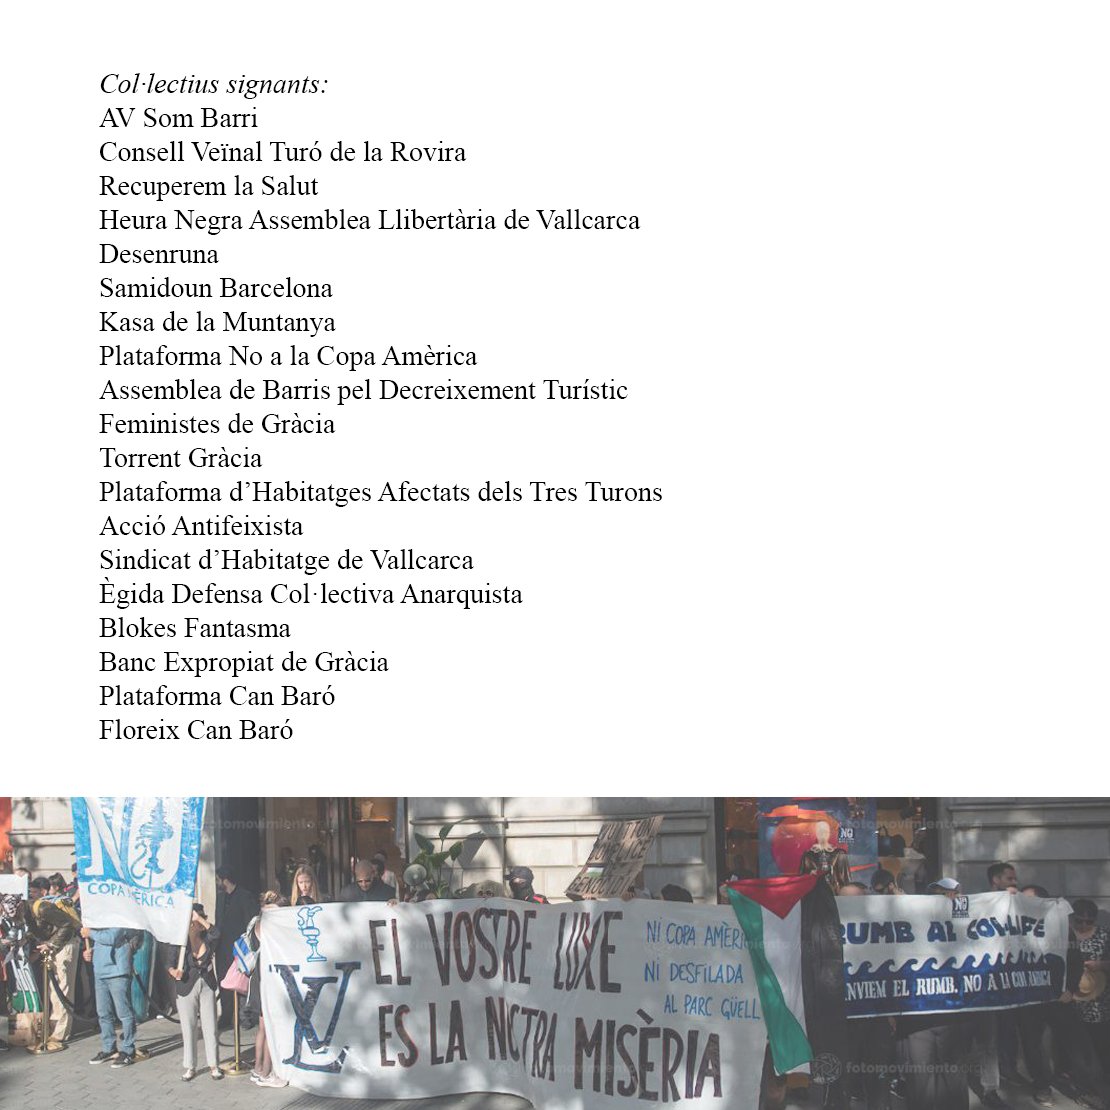 LV: L de lluita veïnal ✊🏽, V de violència policial🛑
Comunicat veïnal de tots els col•lectius participants en la protesta del passat 23 de maig per la desfilada del Louis Vuitton al Parc Güell‼️
#BarcelonaNoEstàEnVenta
#BoicotLouisVuitton
#NoALaCopaAmèrica